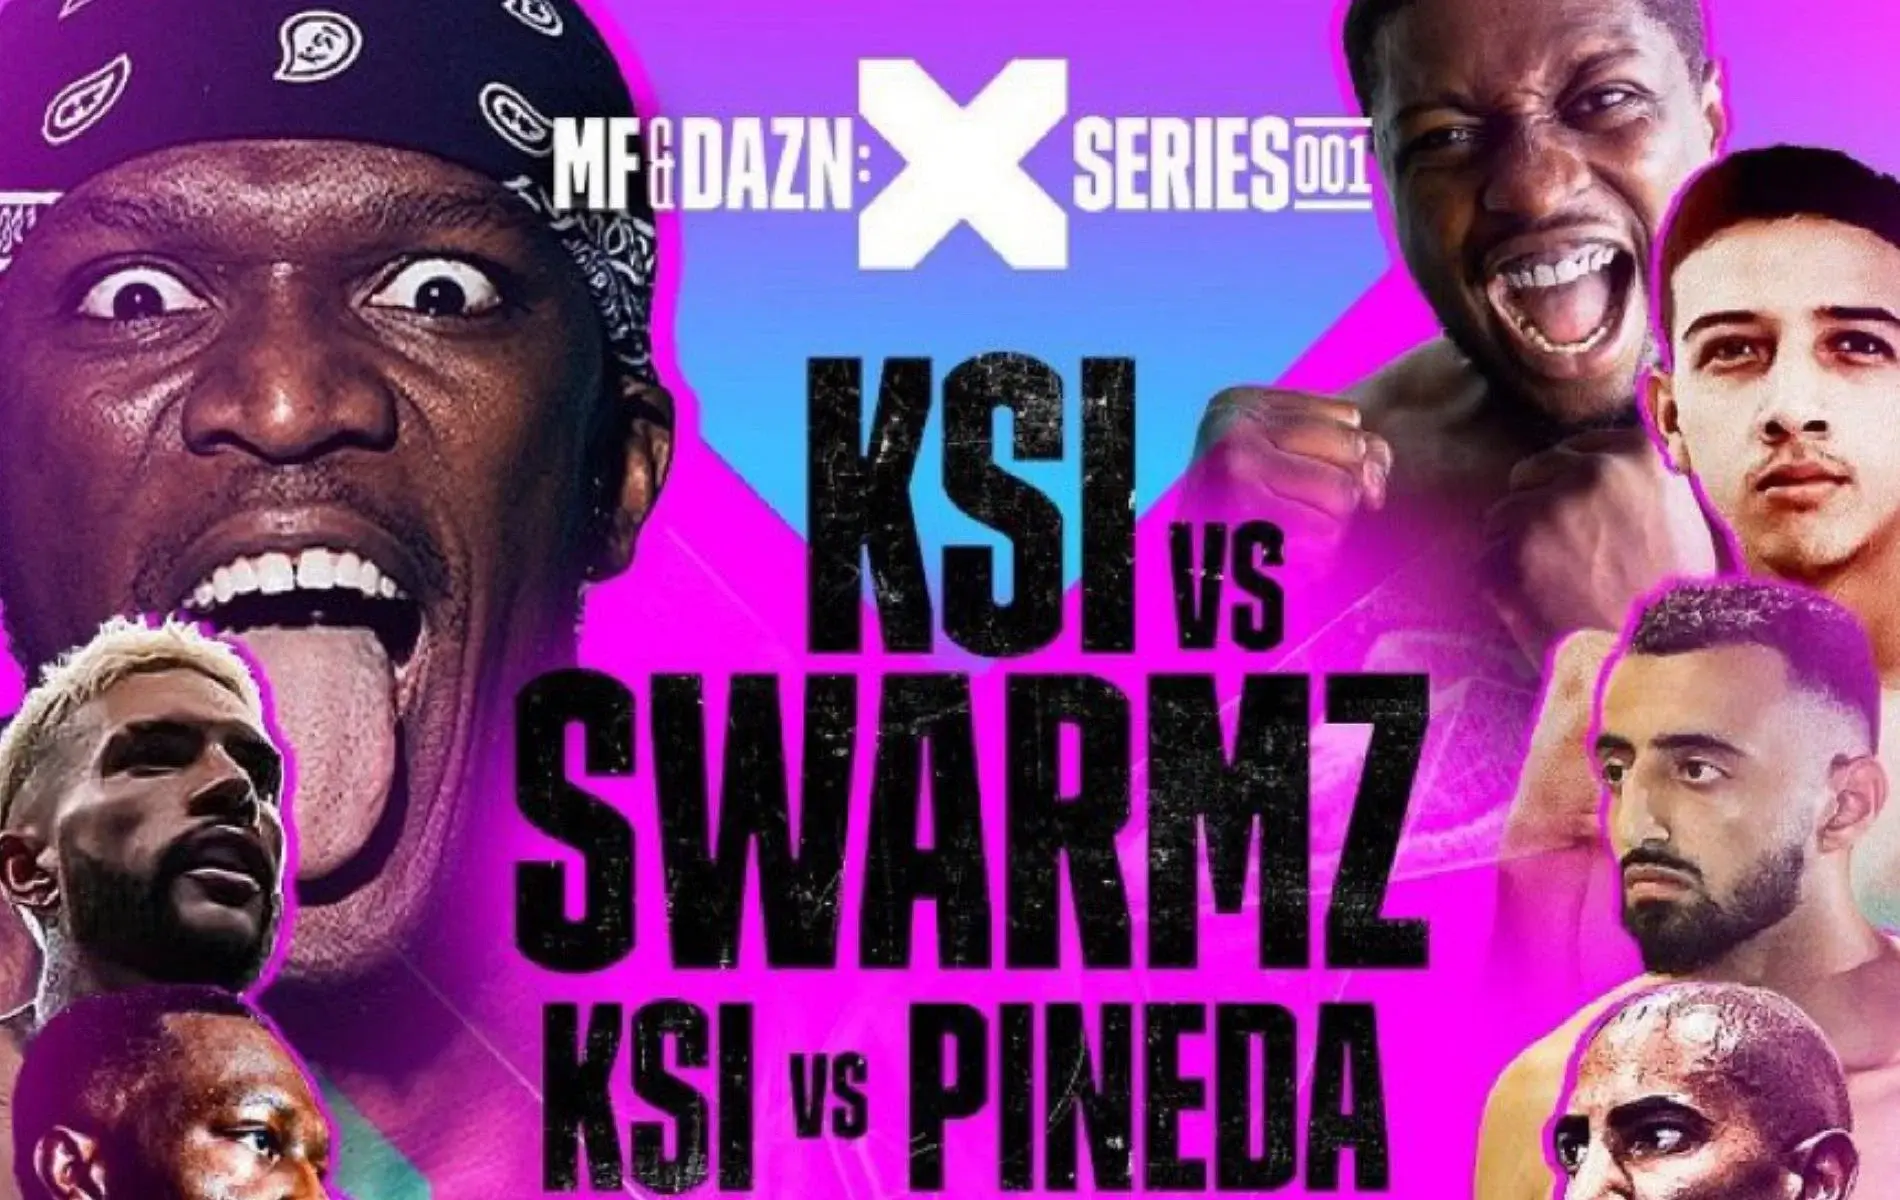 KSI vs Swarmz vs Pineda